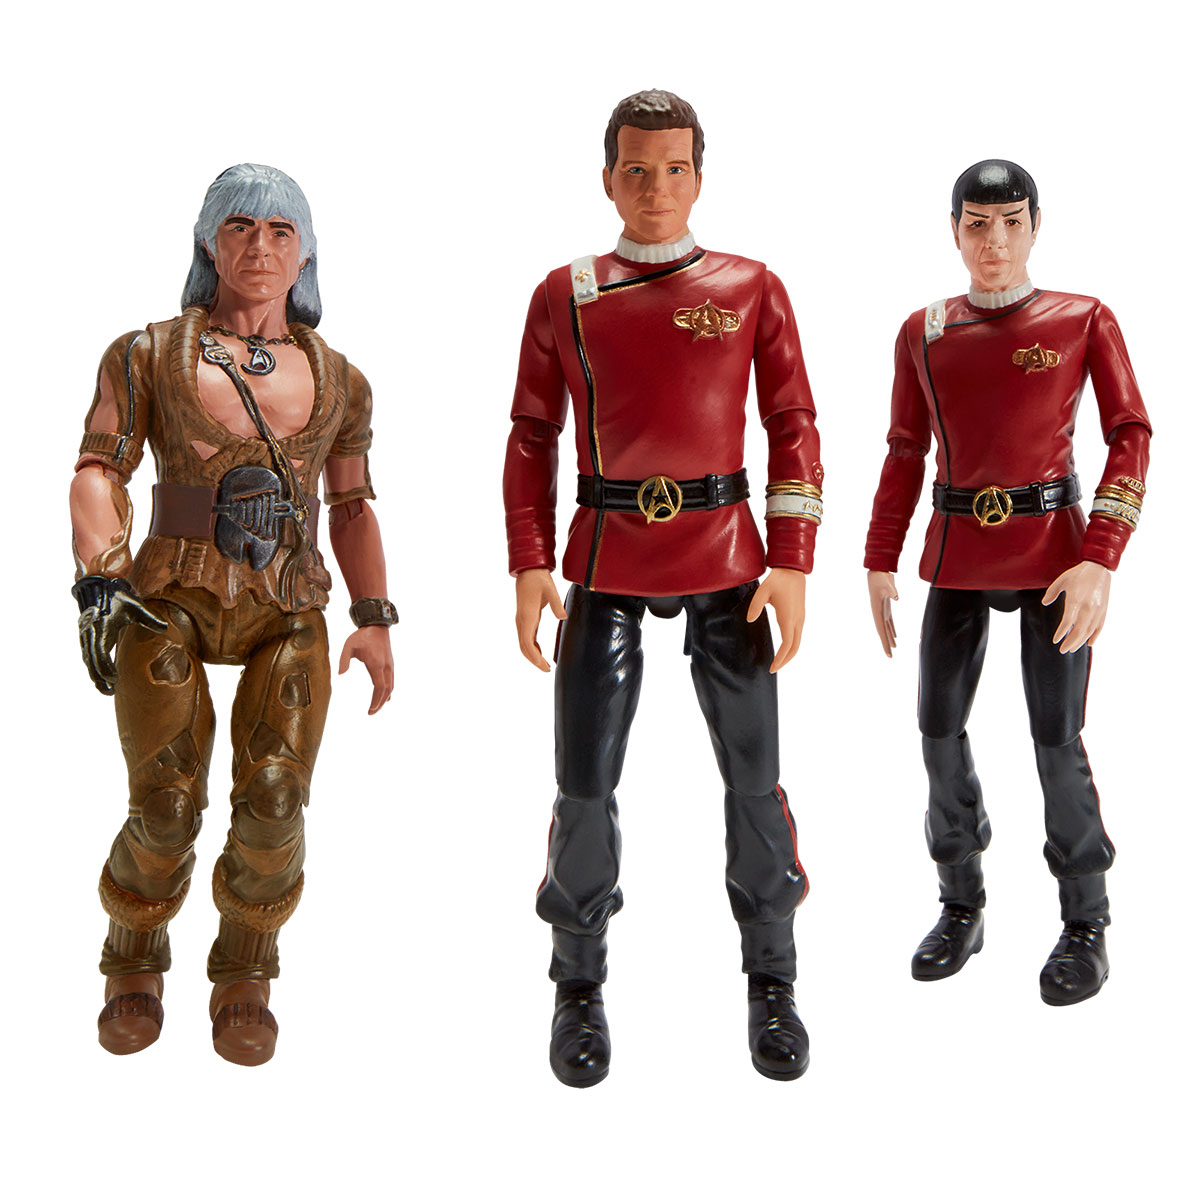 Star Trek II: The Wrath of Khan: Khan Noonien Singh, Admiral James T. Kirk and Captain Spock